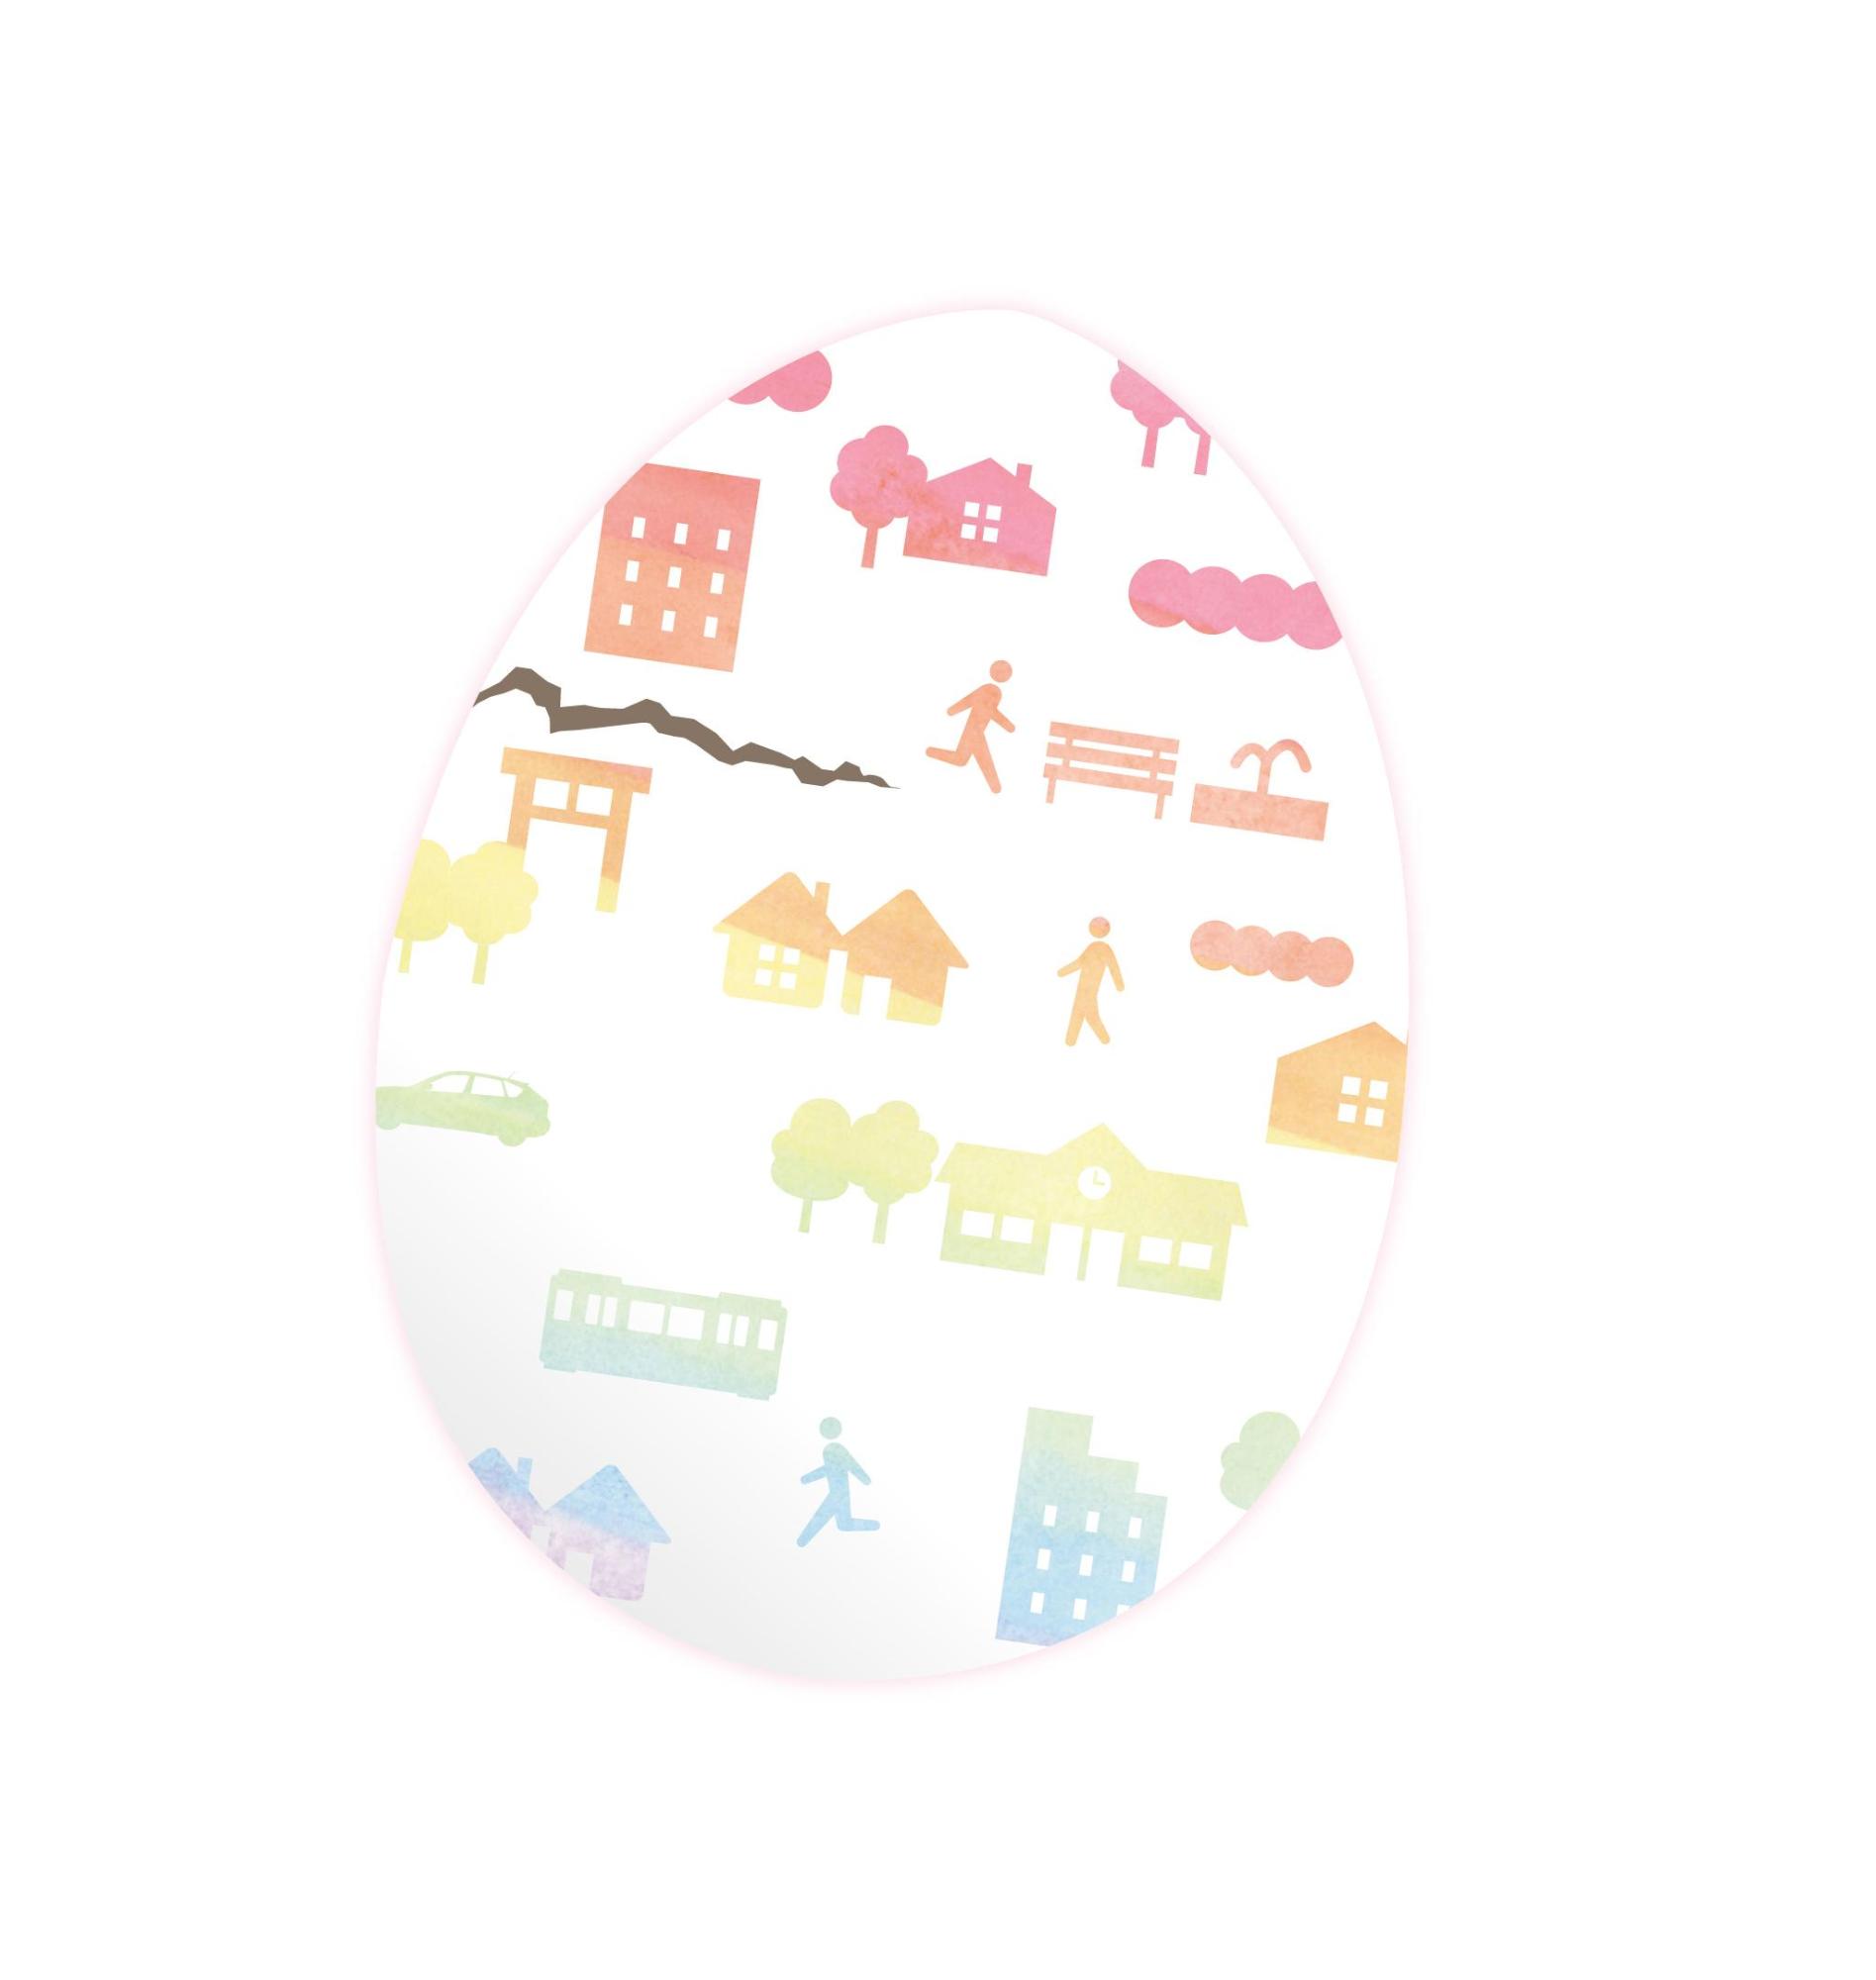 卵に人、建物、木、乗り物などが描かれたイラスト